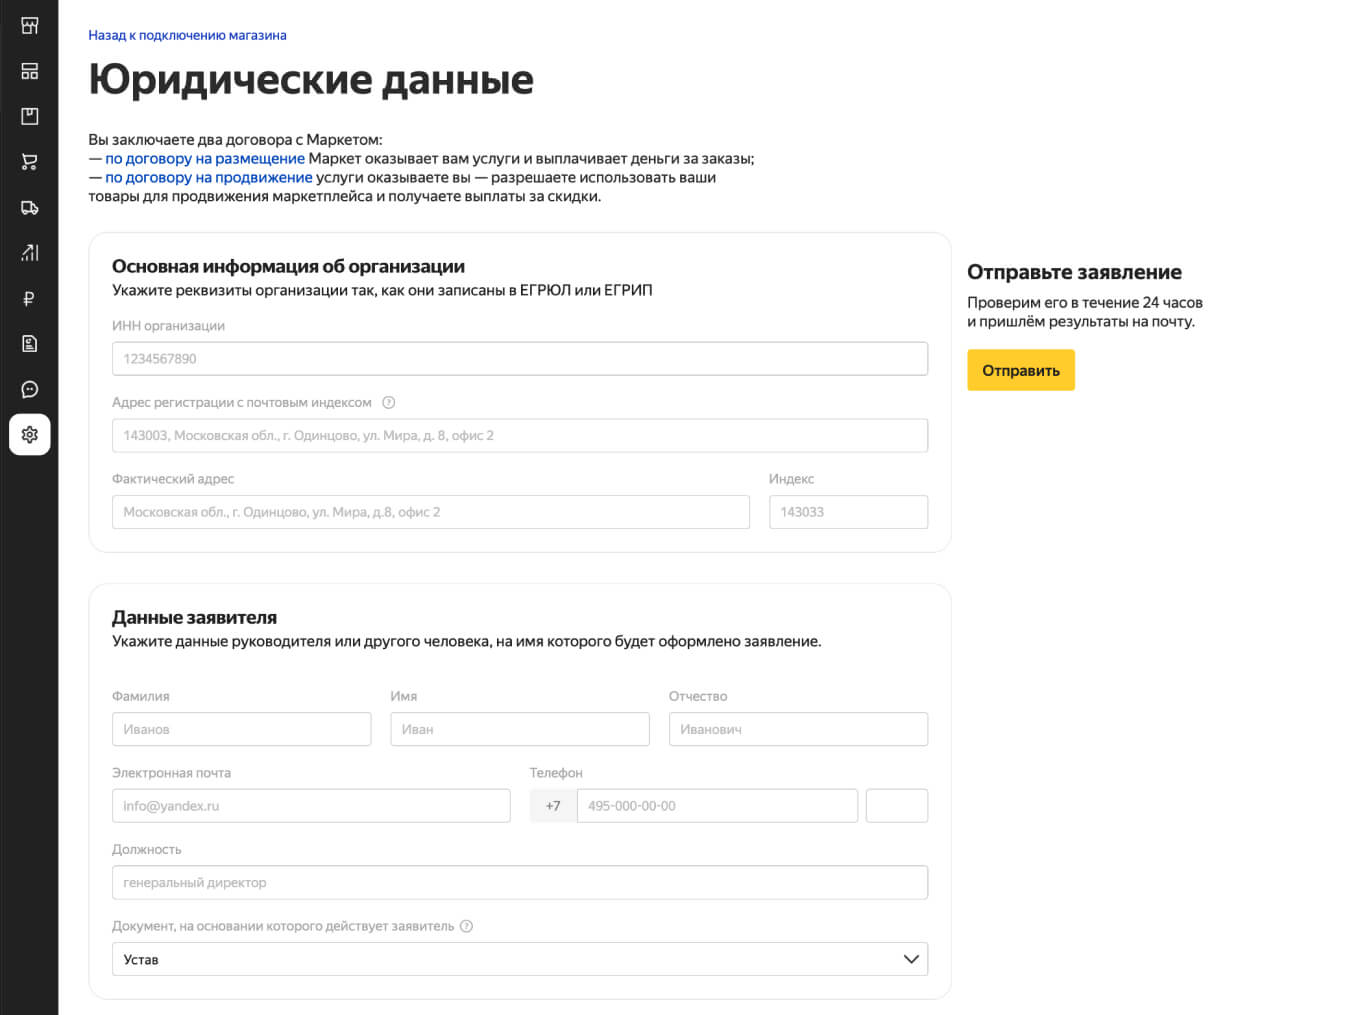 Как продавать на Яндекс Маркете: как разместить свой товар, условия,  сколько стоит создание магазина